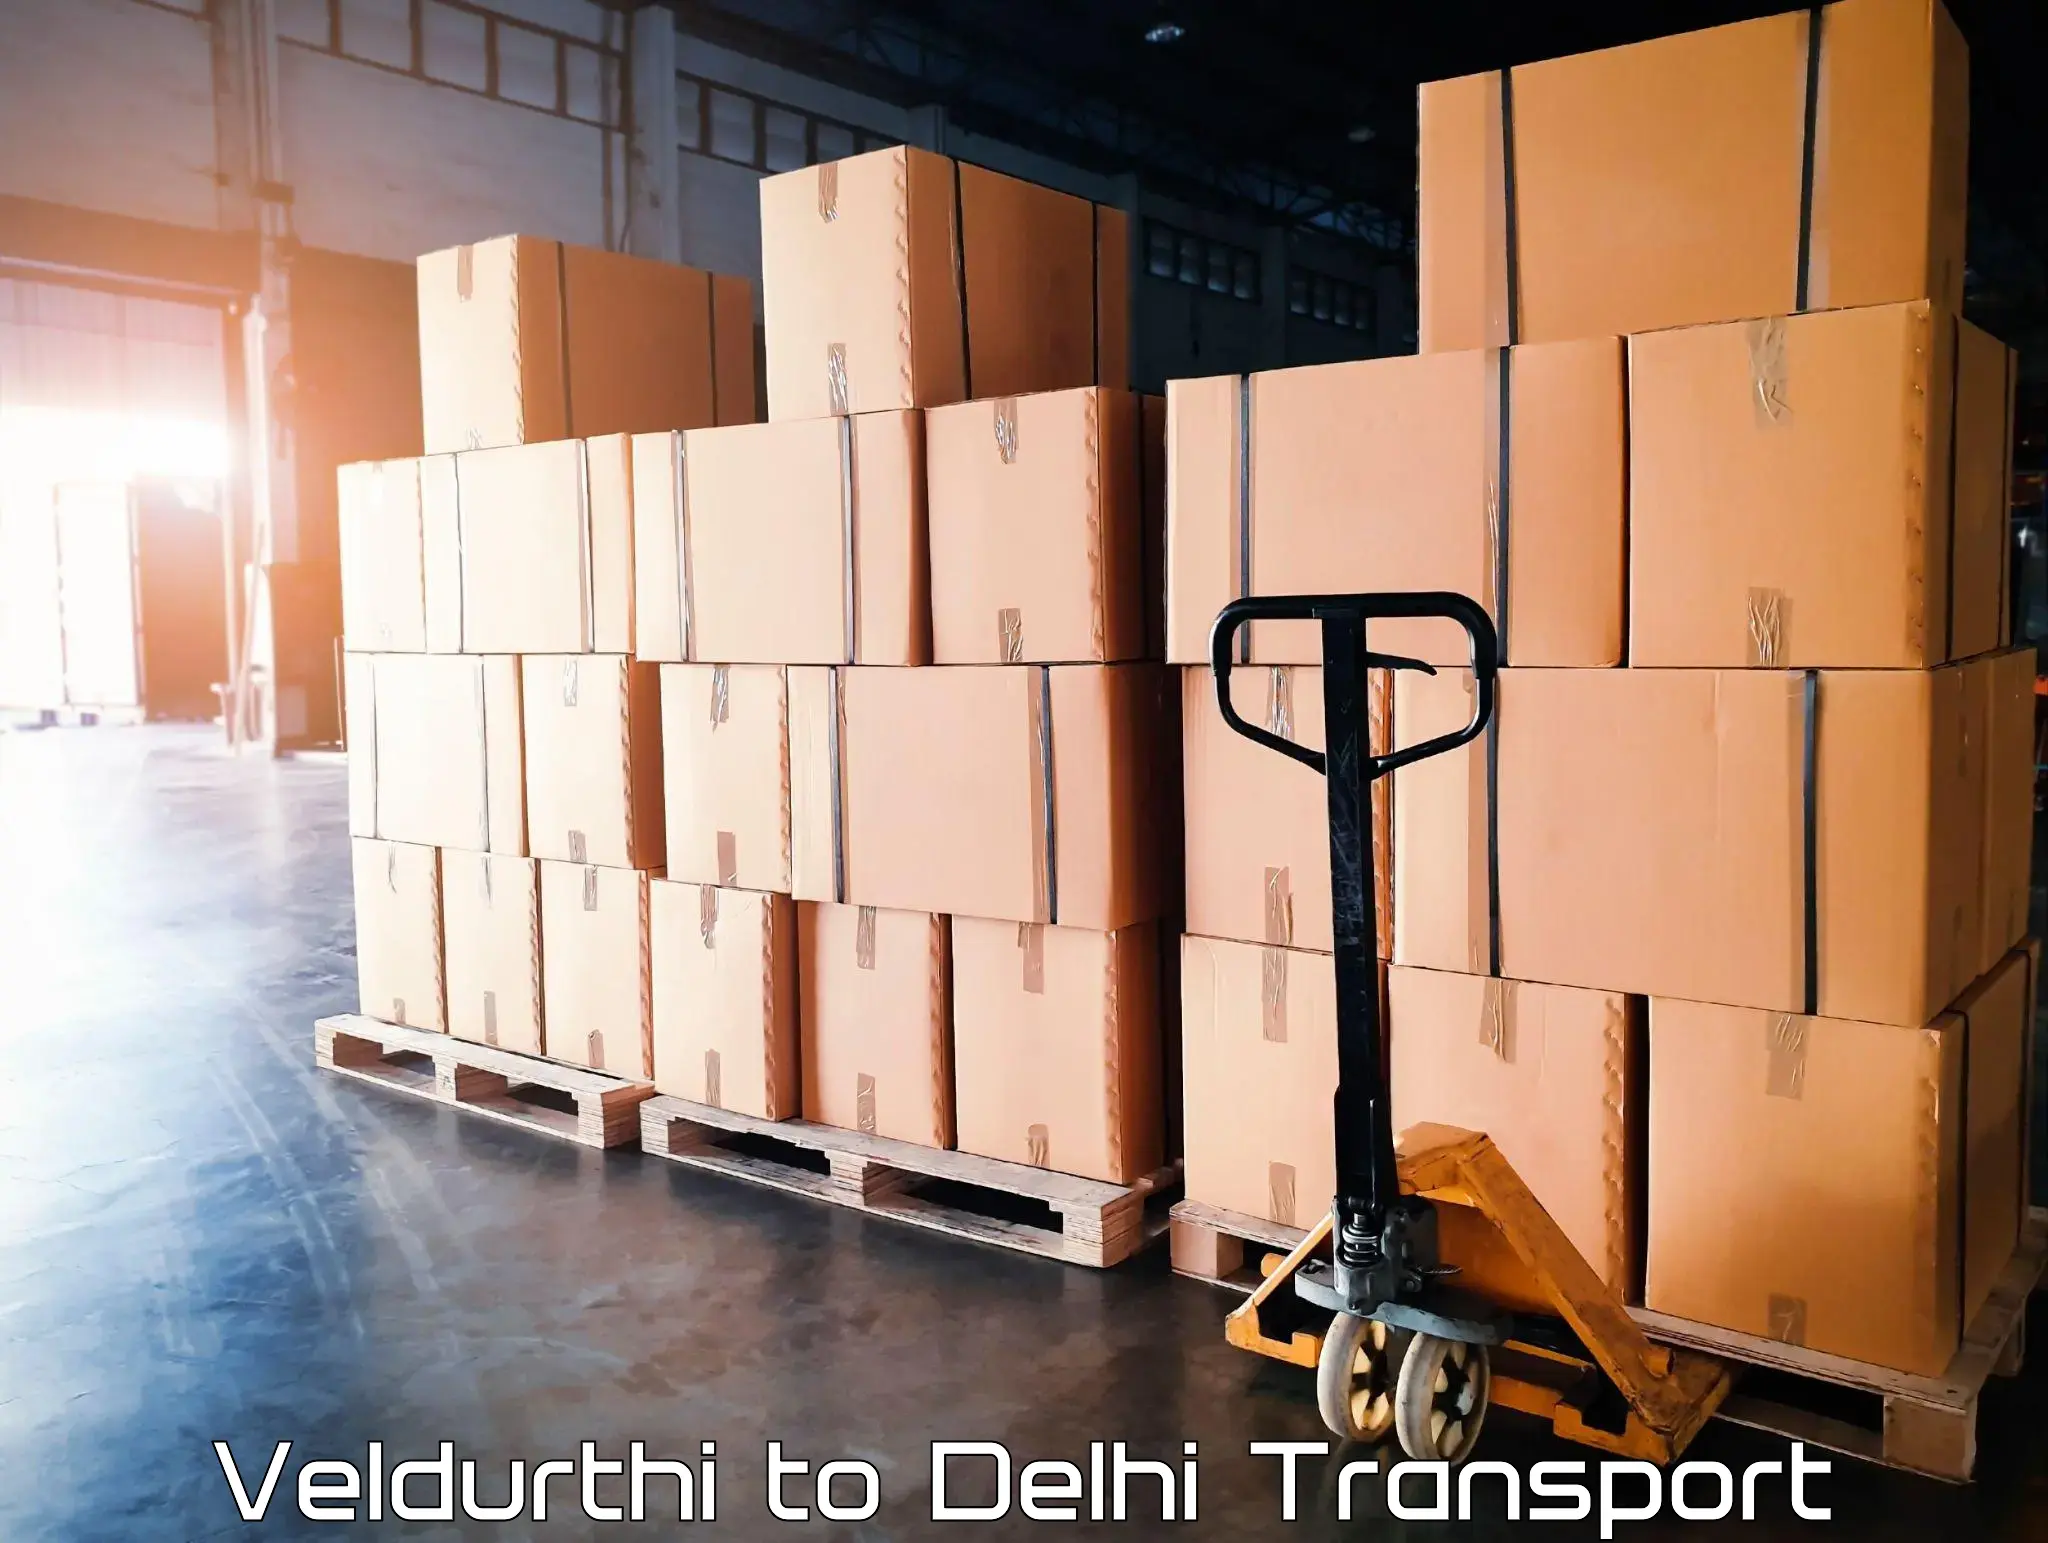 Nationwide transport services Veldurthi to Delhi